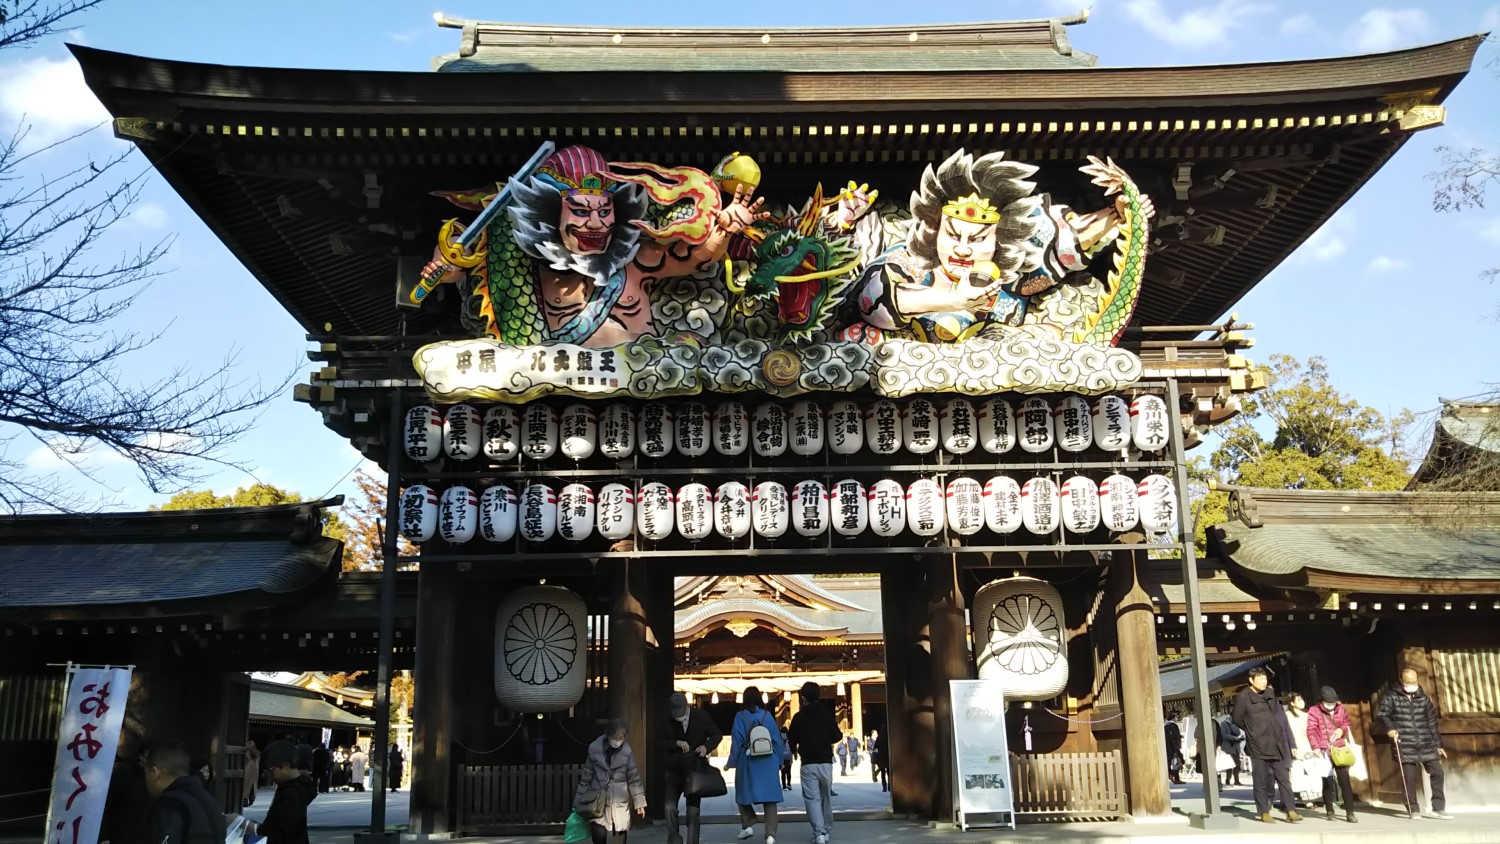 at Samukawa Shrine